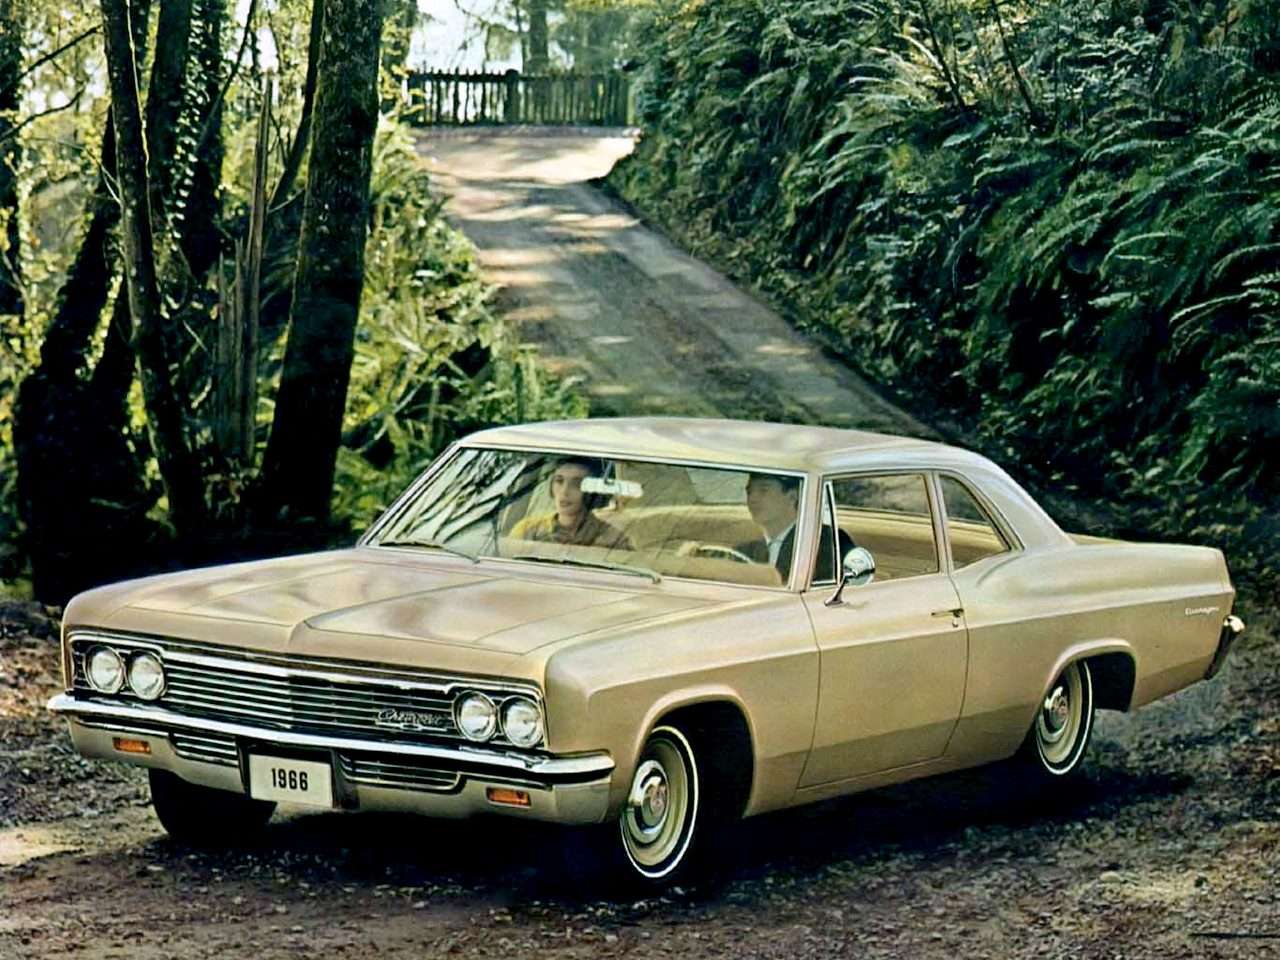 1966 Chevrolet Biscayne 2-door sedan puzzle online